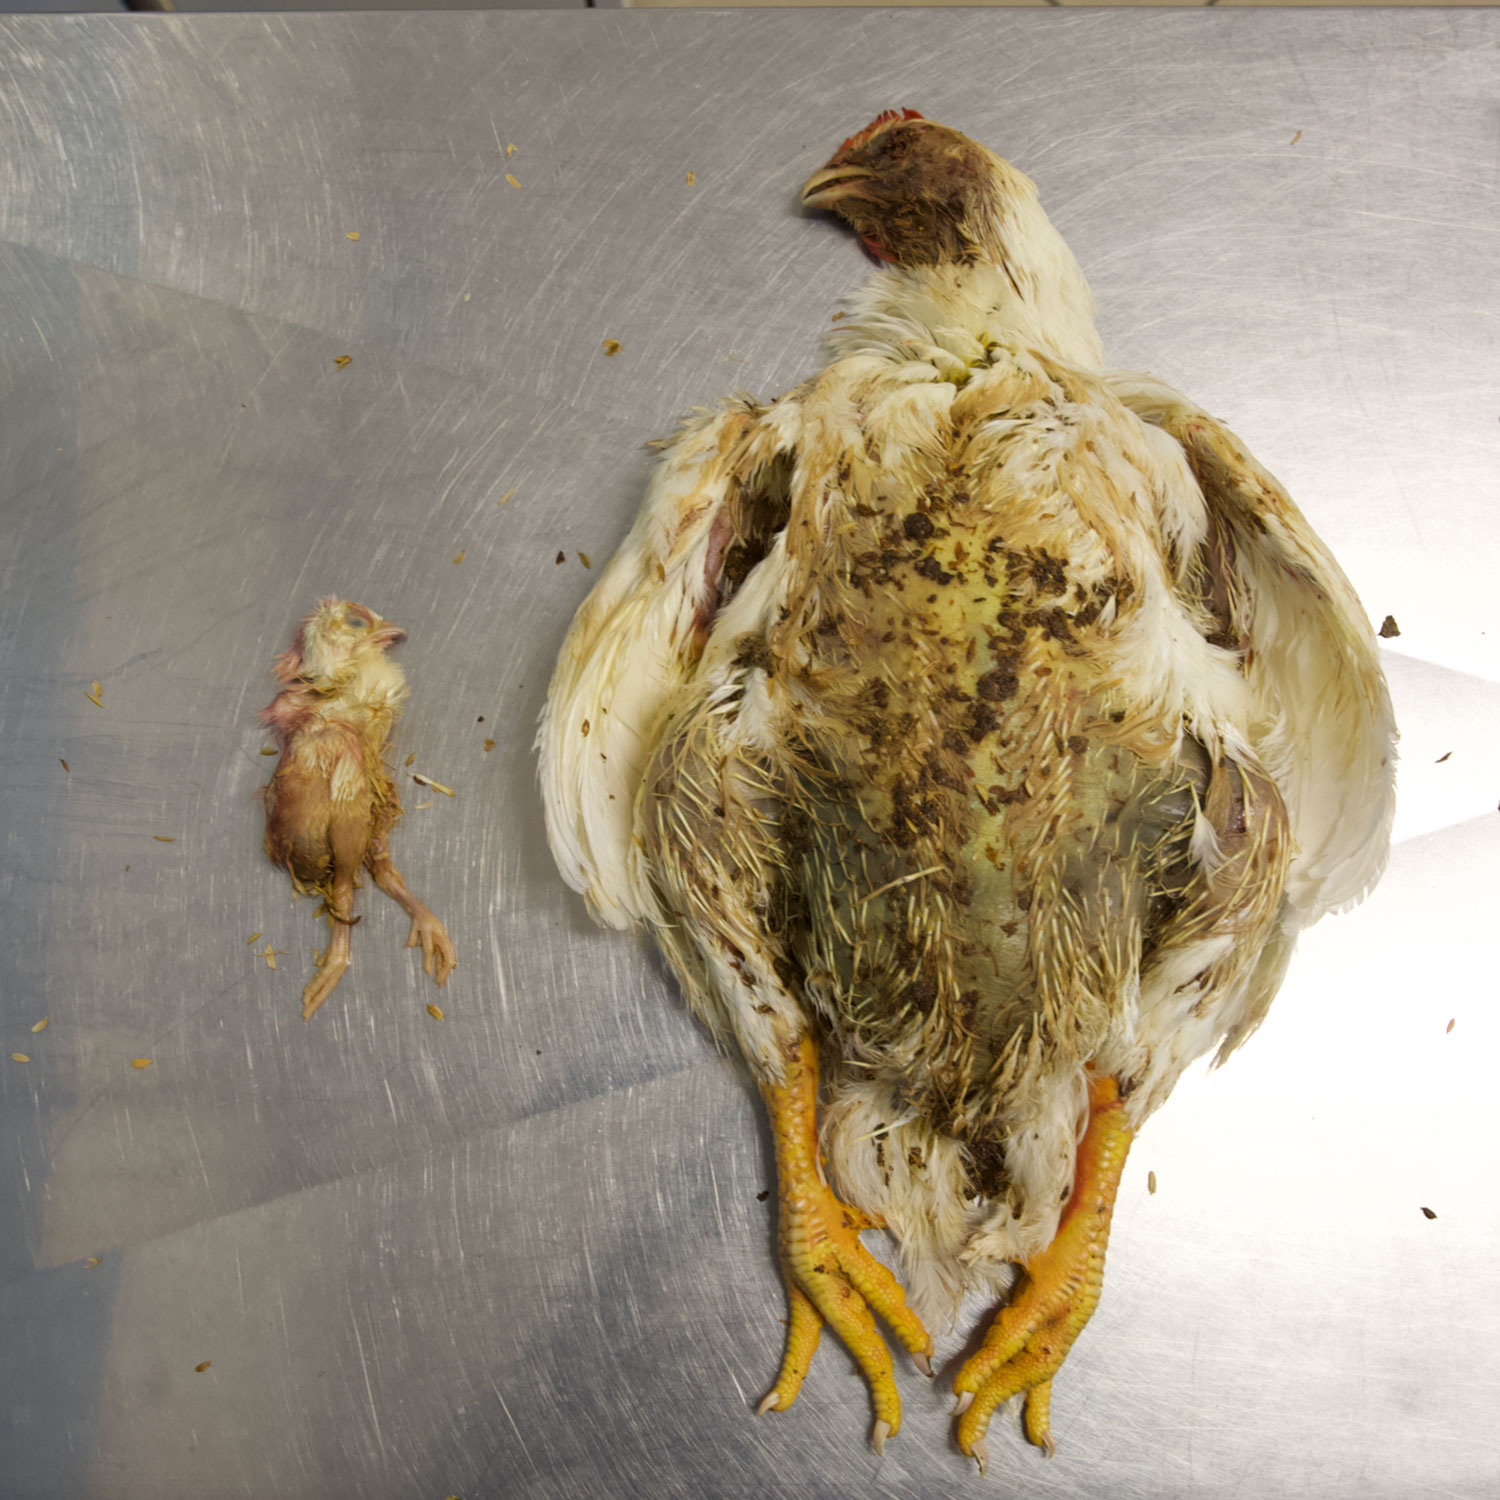 La selección genética de los pollos broiler es incompatible con el bienestar